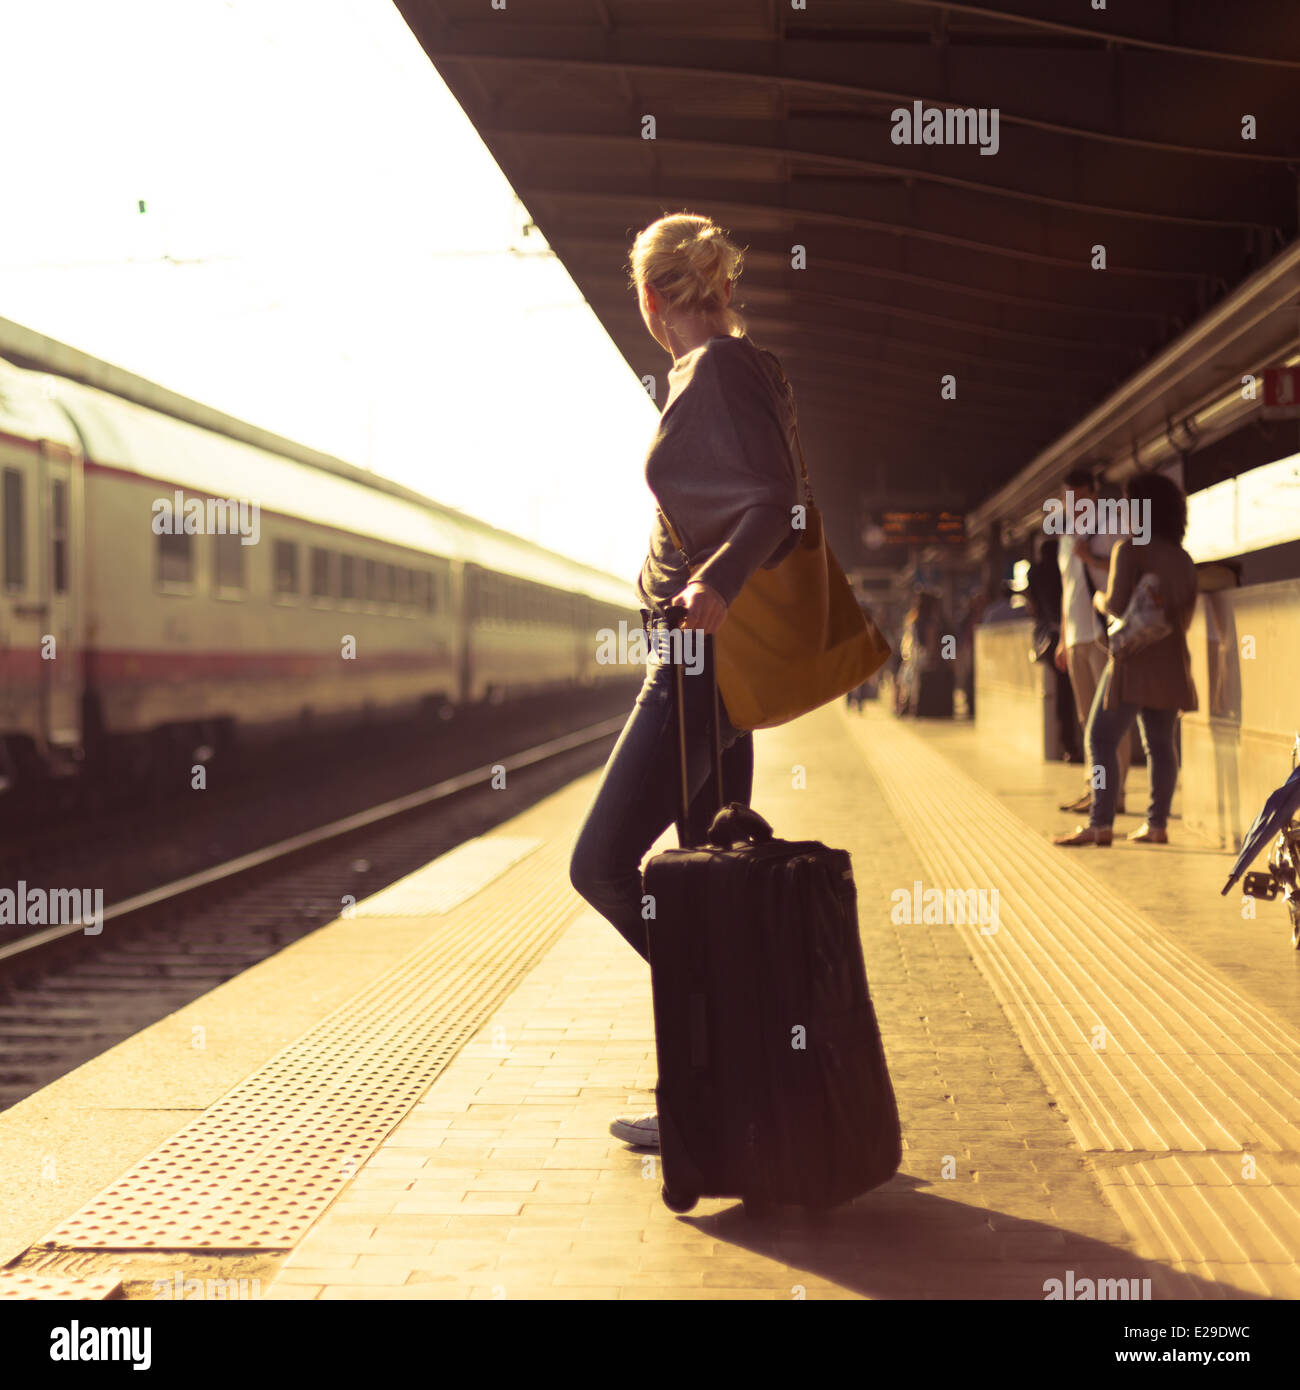 Вечером уезжать собиралась. Девушка на вокзале с чемоданом. Девушка на перроне вокзала. Фотосессия на вокзале с чемоданом. Девушка с чемоданом уходит.